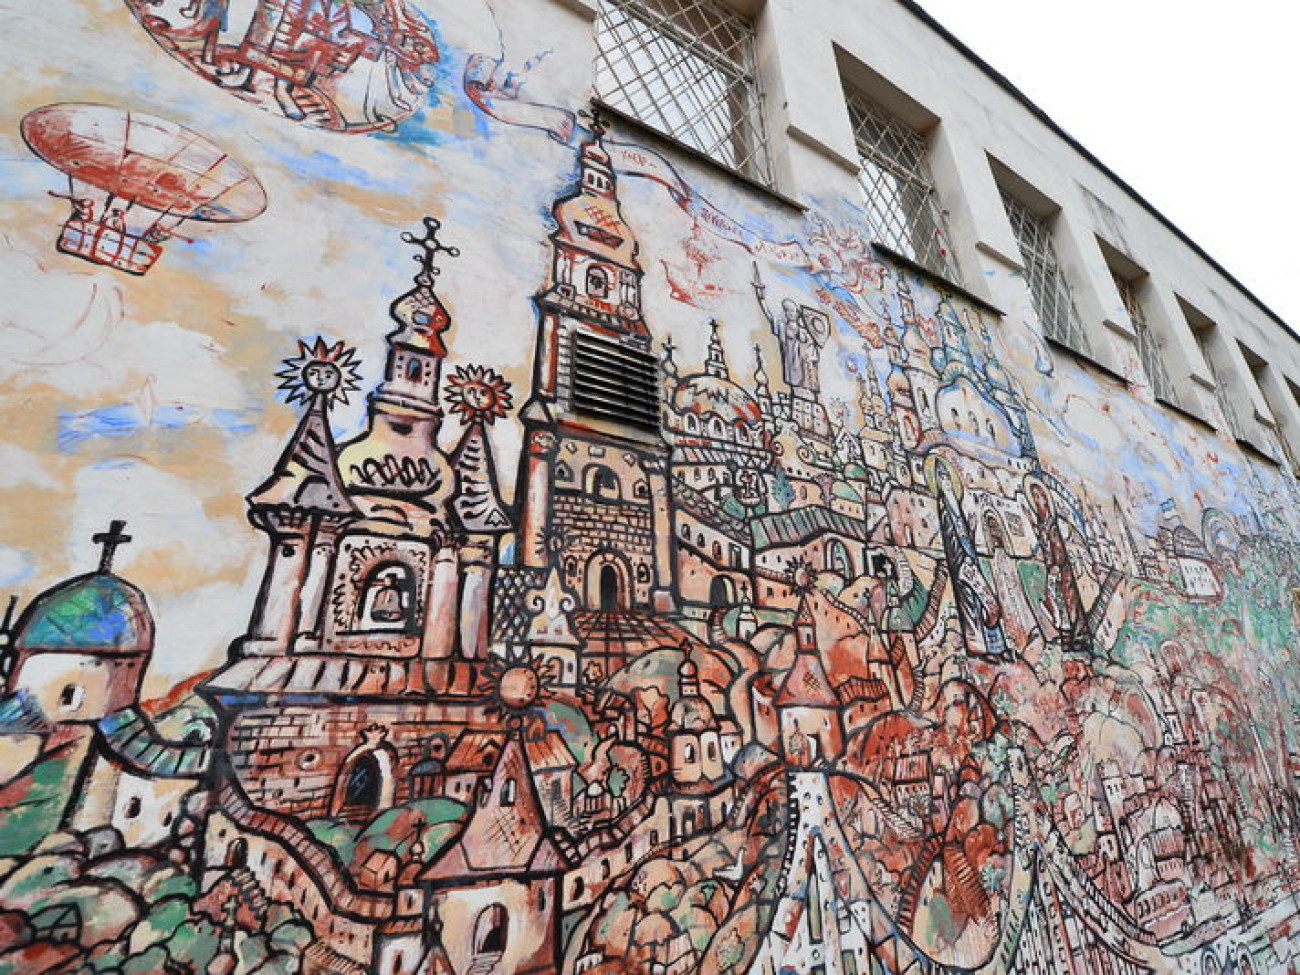 Символы Киева на одной стене: киевский художник расписал обычную бойлерную